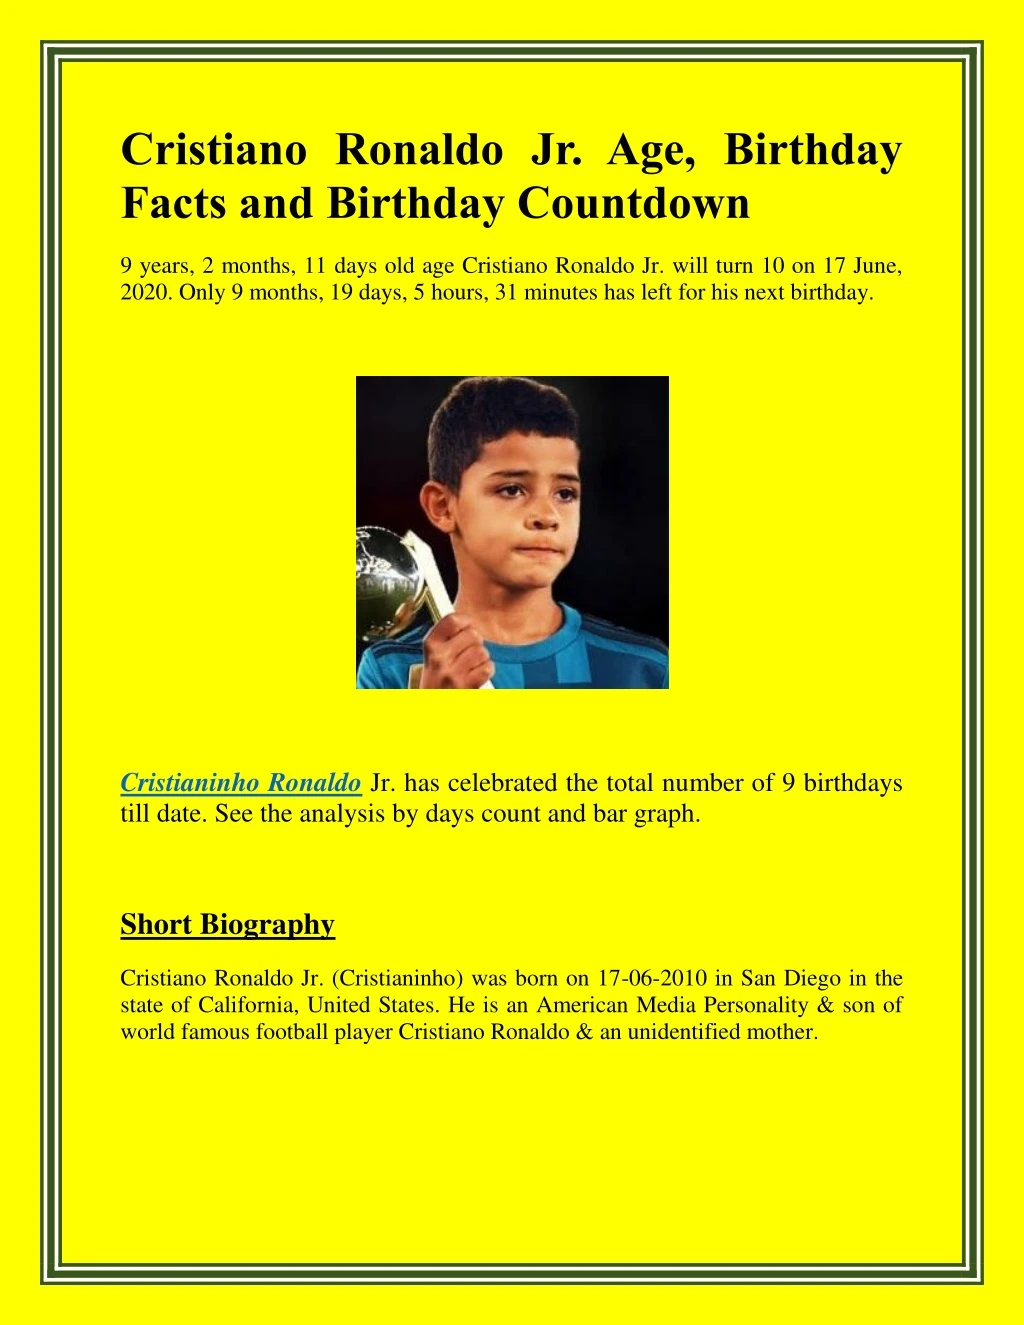 cristiano ronaldo jr age birthday facts